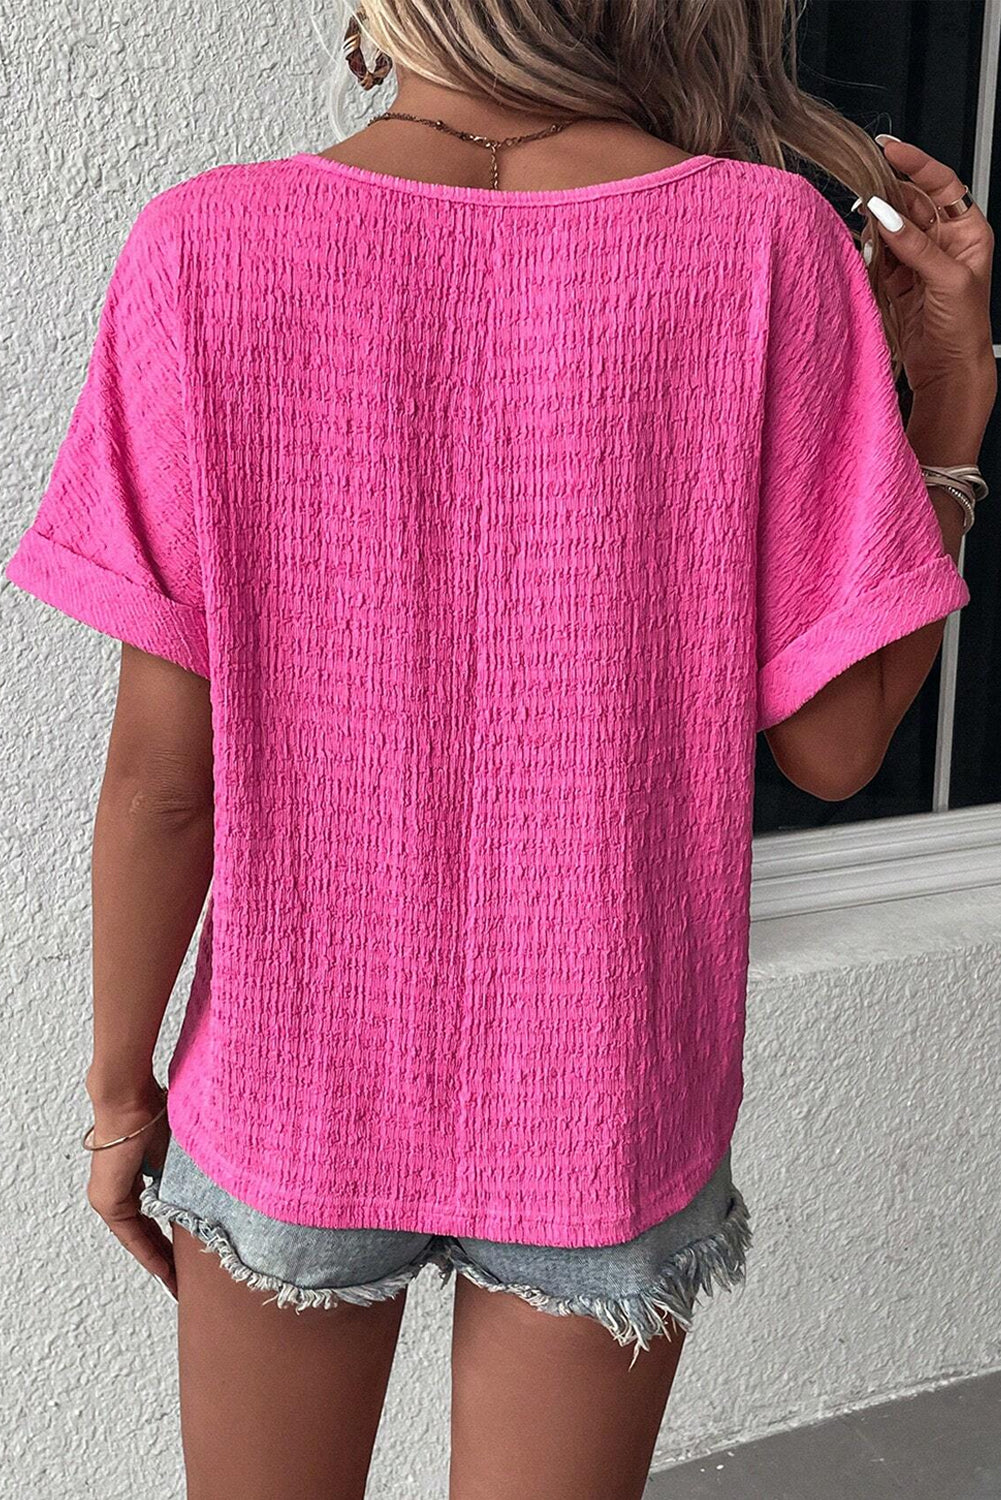 T-shirt texturé à manches pliées et col en V de grande taille rose vif